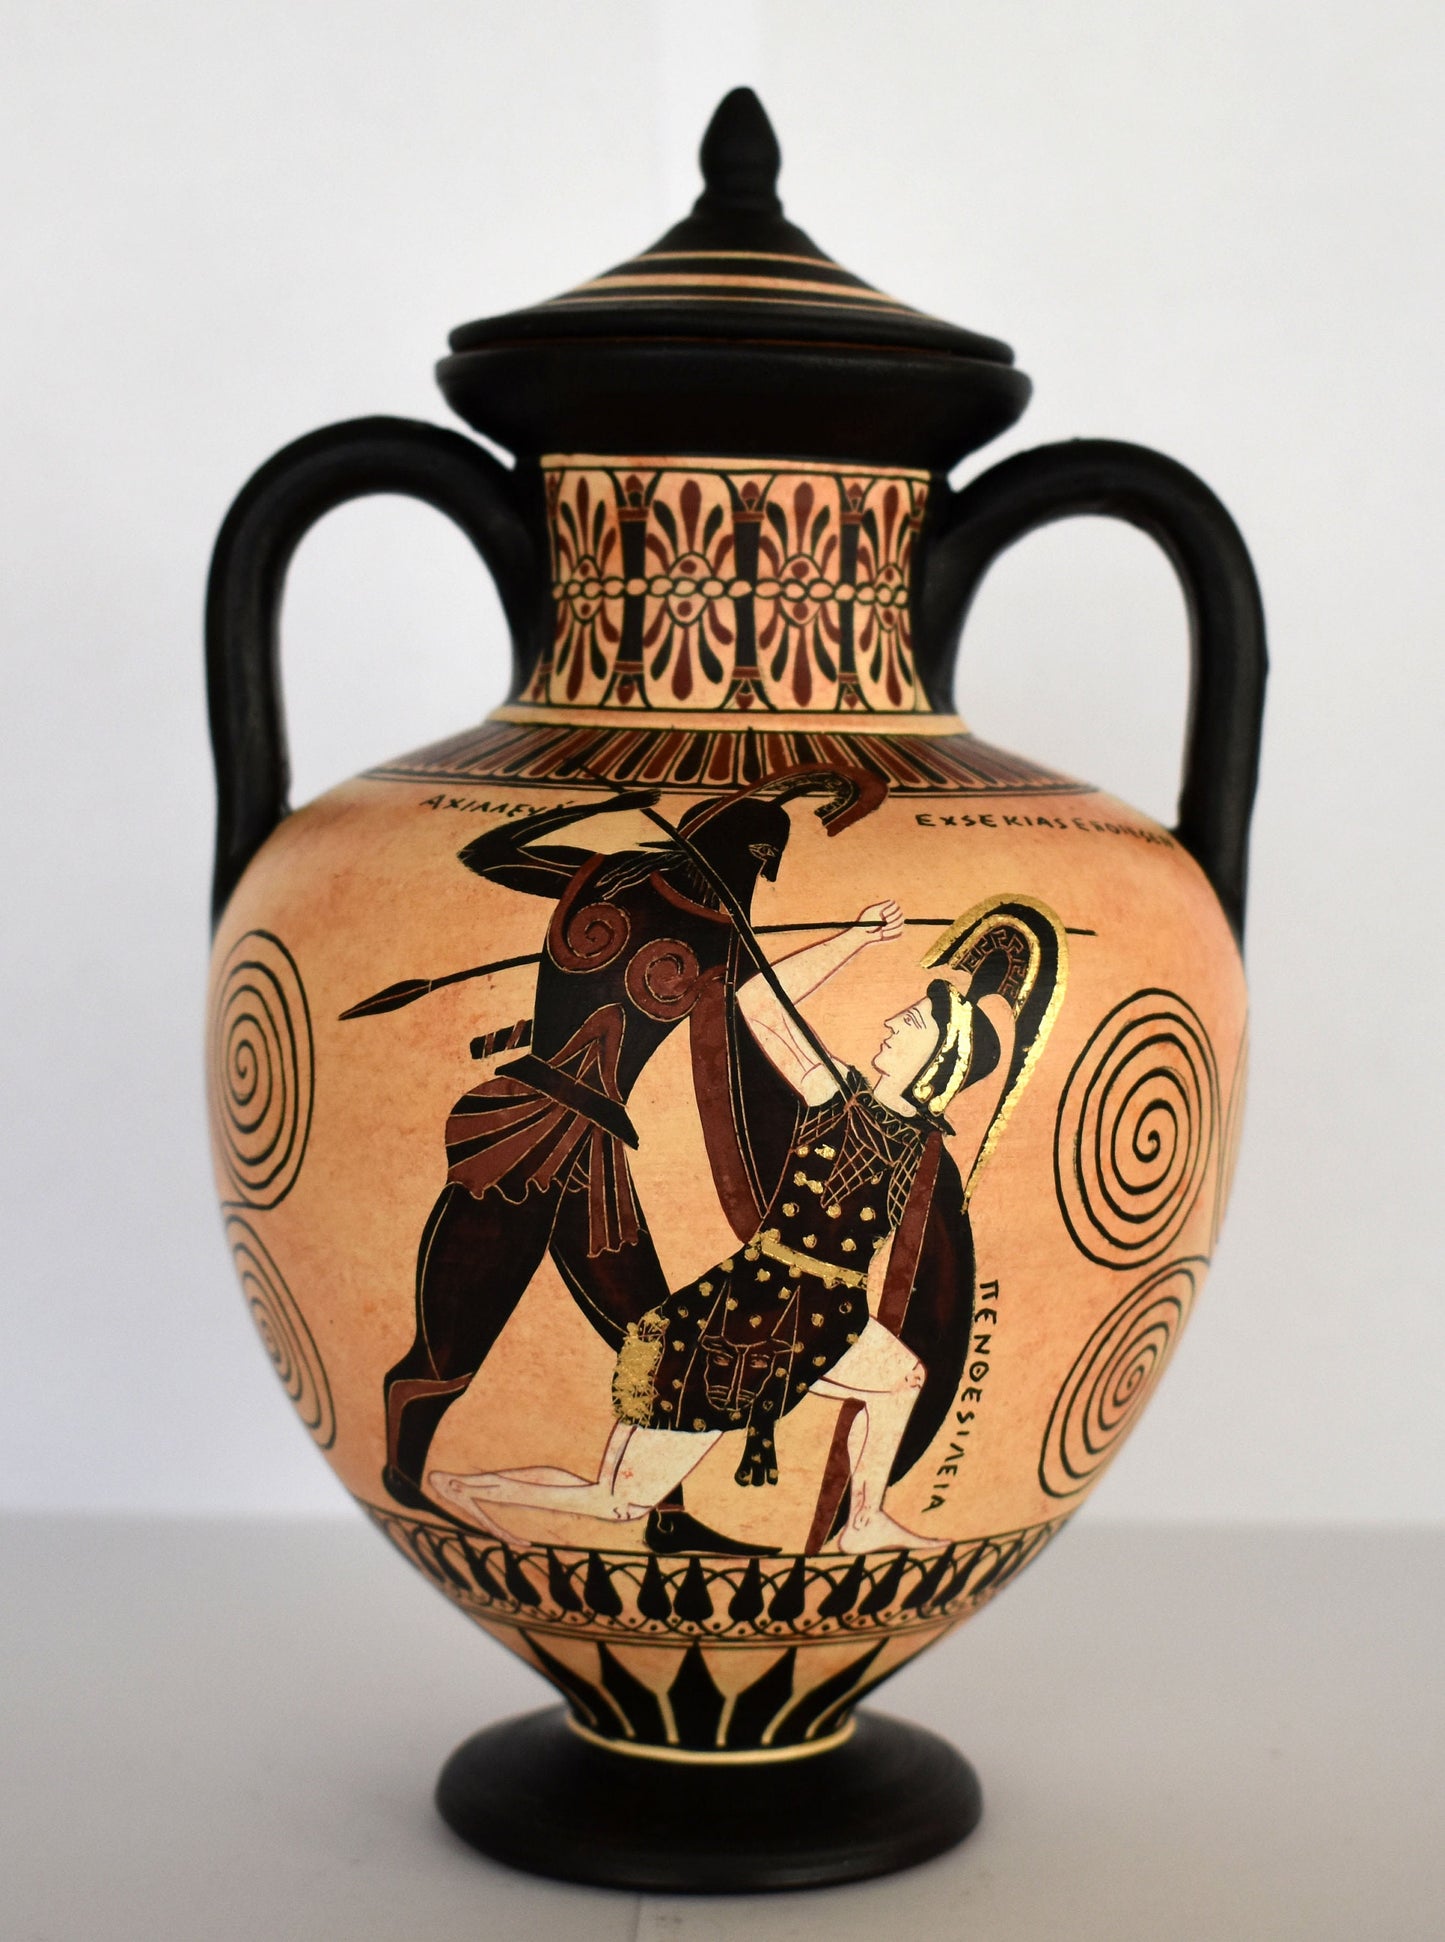 Achilles and Penthesileia, Amazonian Queen - Homer's Iliad - Floral Motif - Classic Period - 600 BC - Ceramic Vase